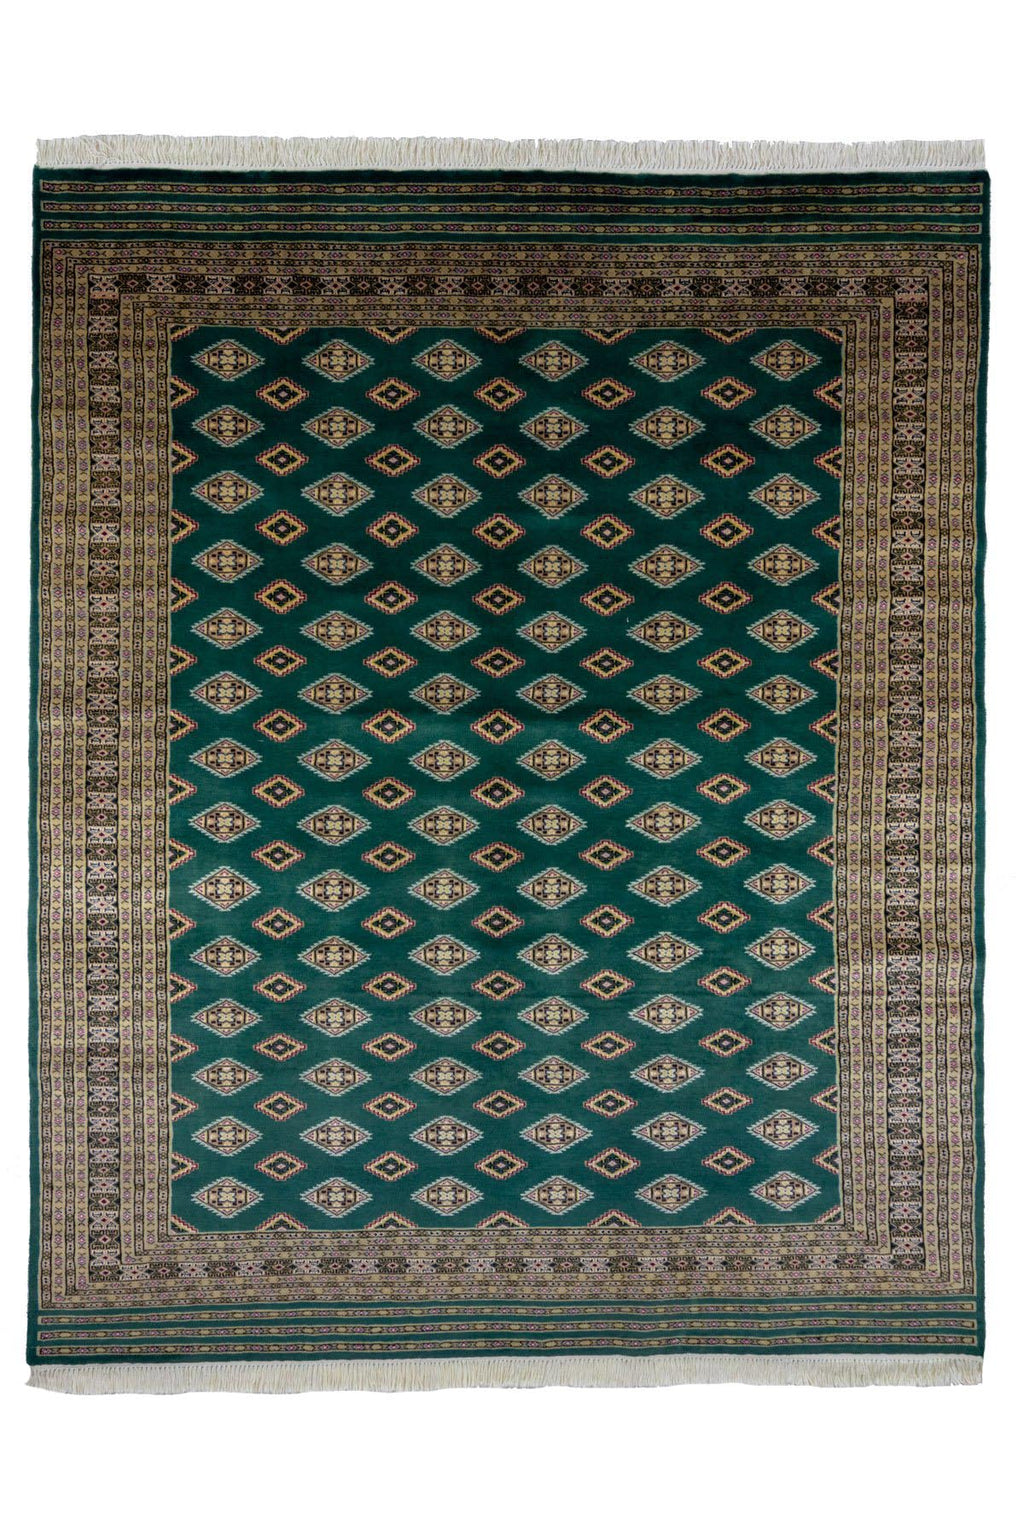 パキスタン絨毯(200x249cm)緑 手織り ペルシャ【絨毯専門店】